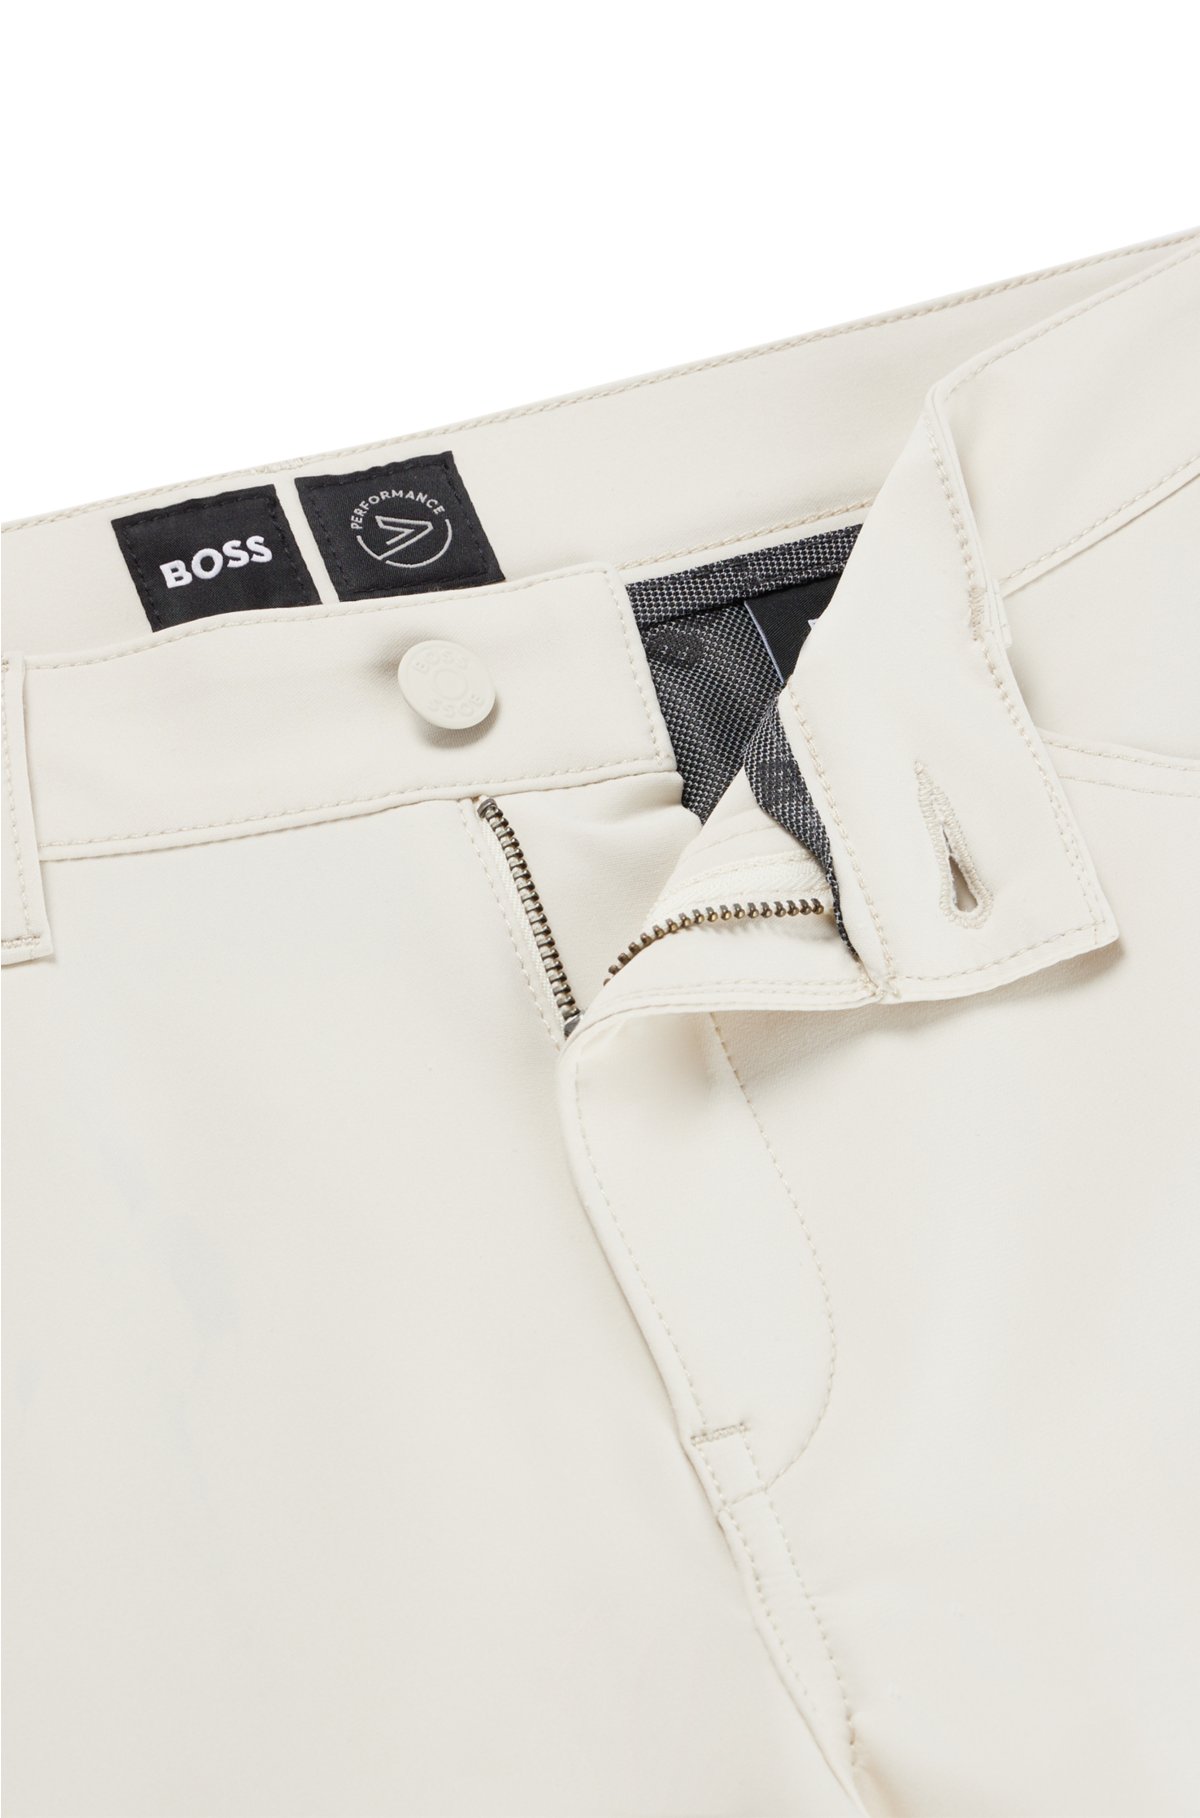 Super stretch slim fit Jackie jeans in denim - BOSS - Pellecchia Store